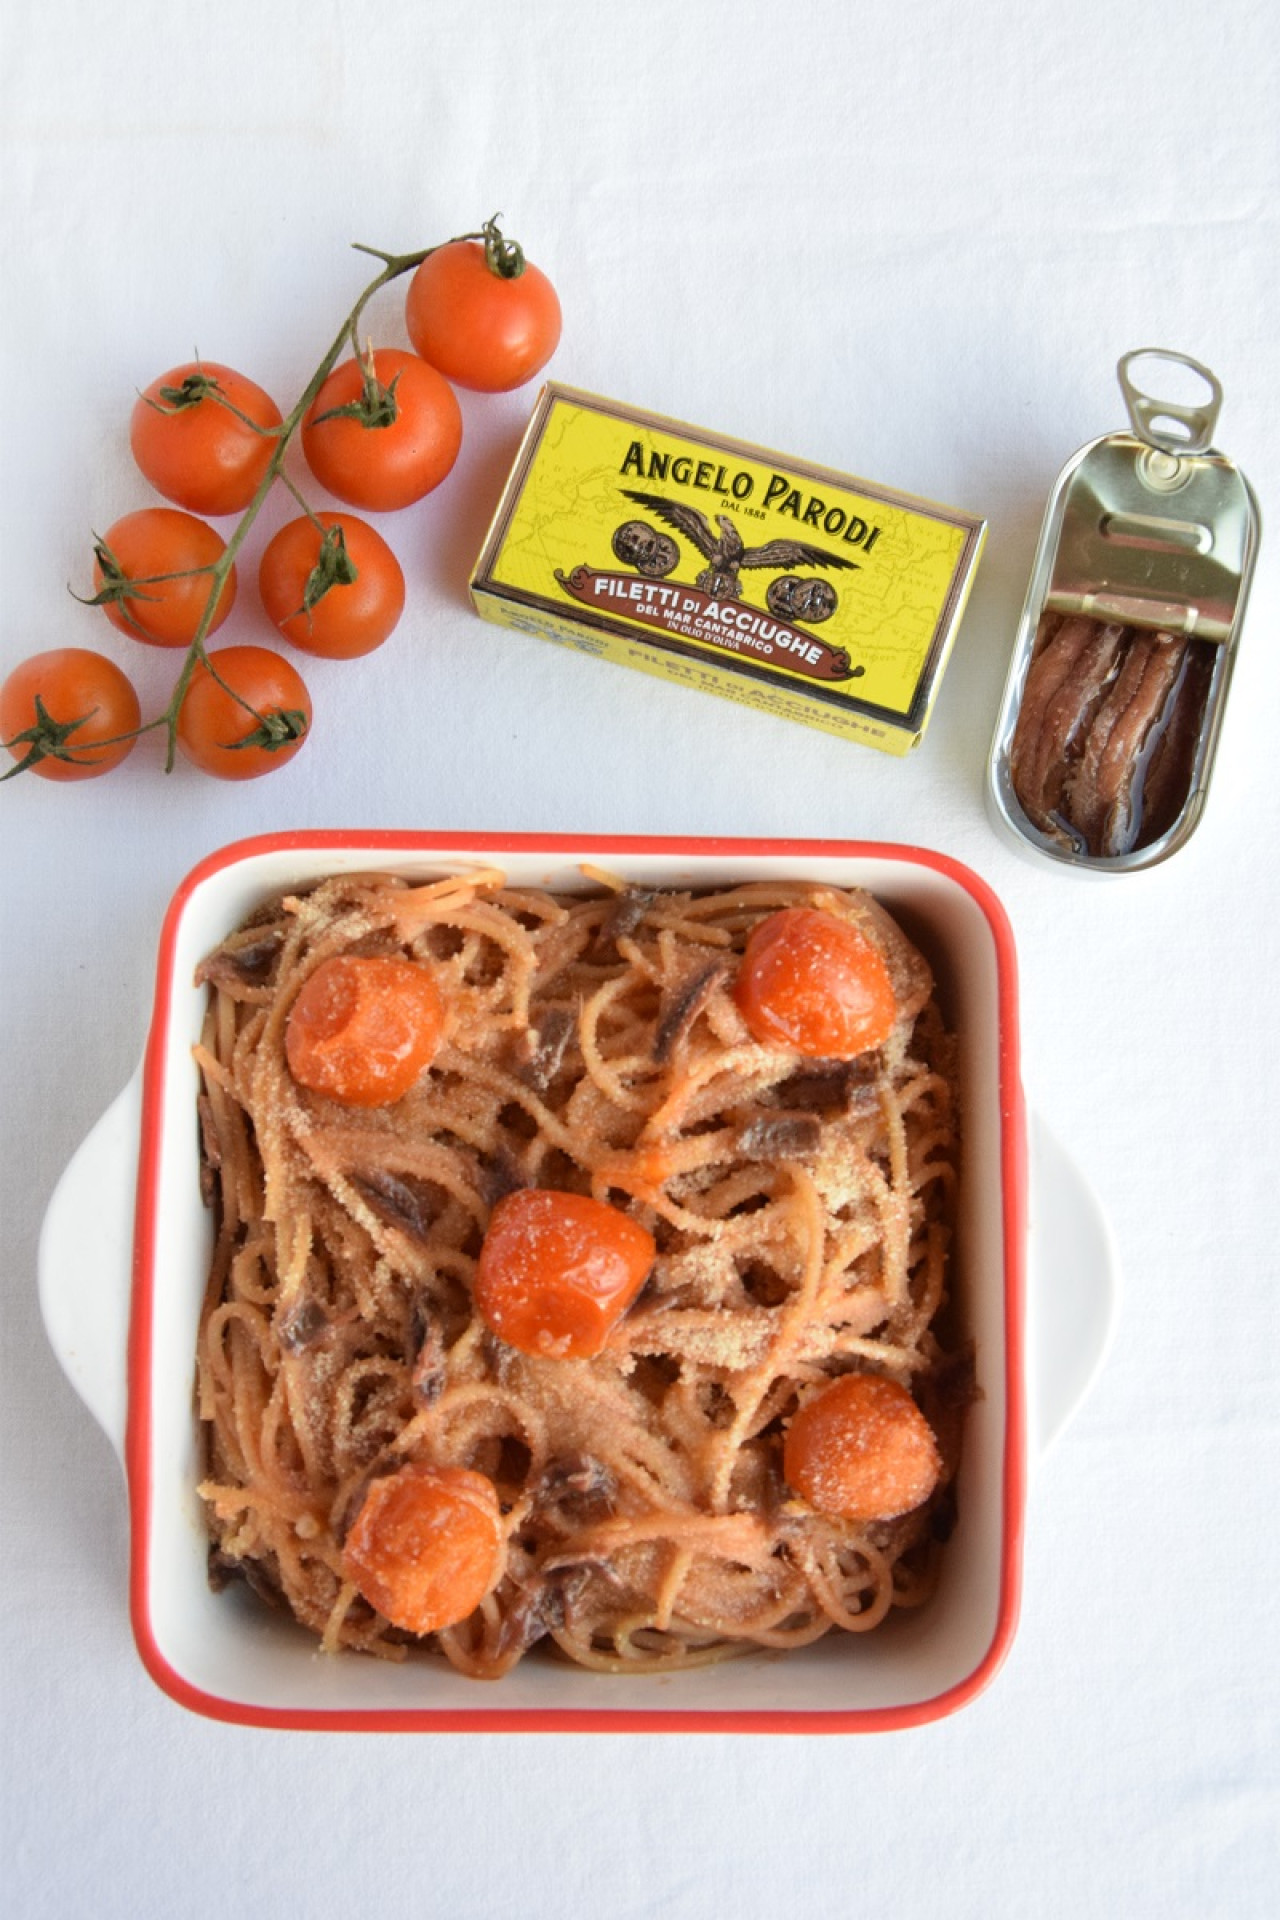 Spaghetti gratinati al forno con pomodoro e Filetti di Acciughe del Mar Cantabrico Angelo Parodi